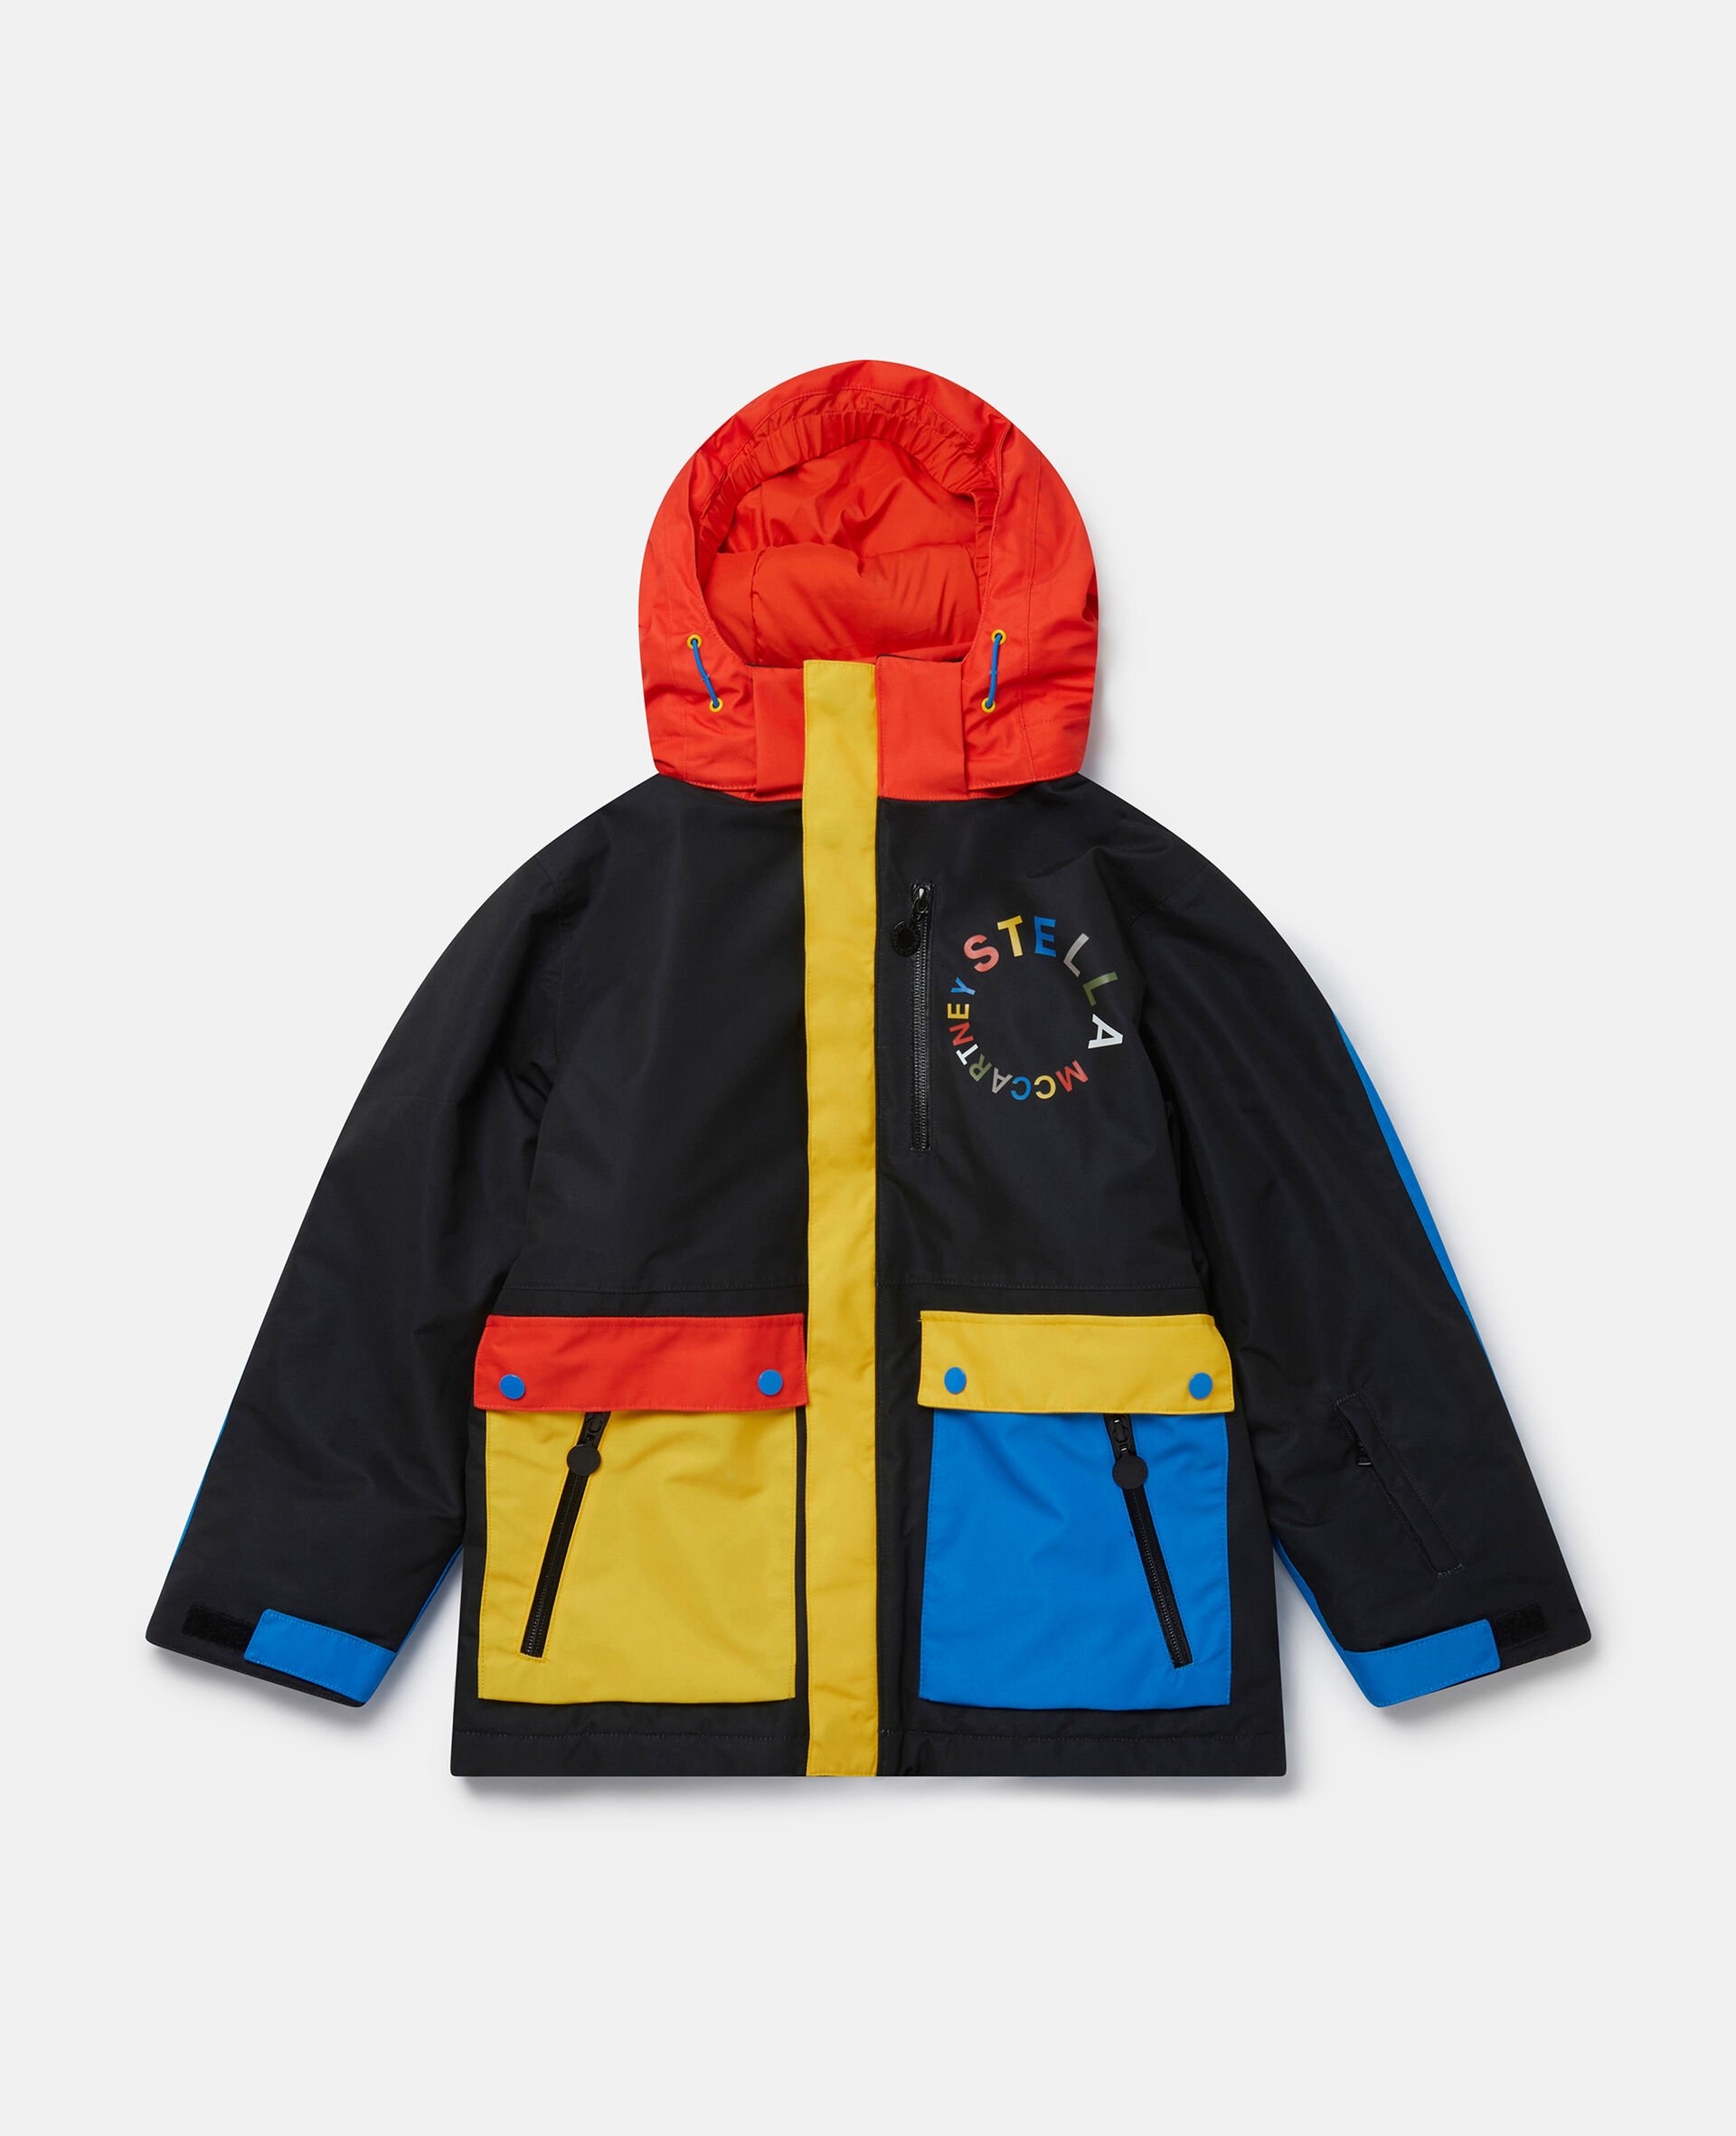 Veste de ski à capuche color block-Fantaisie-large image number 0